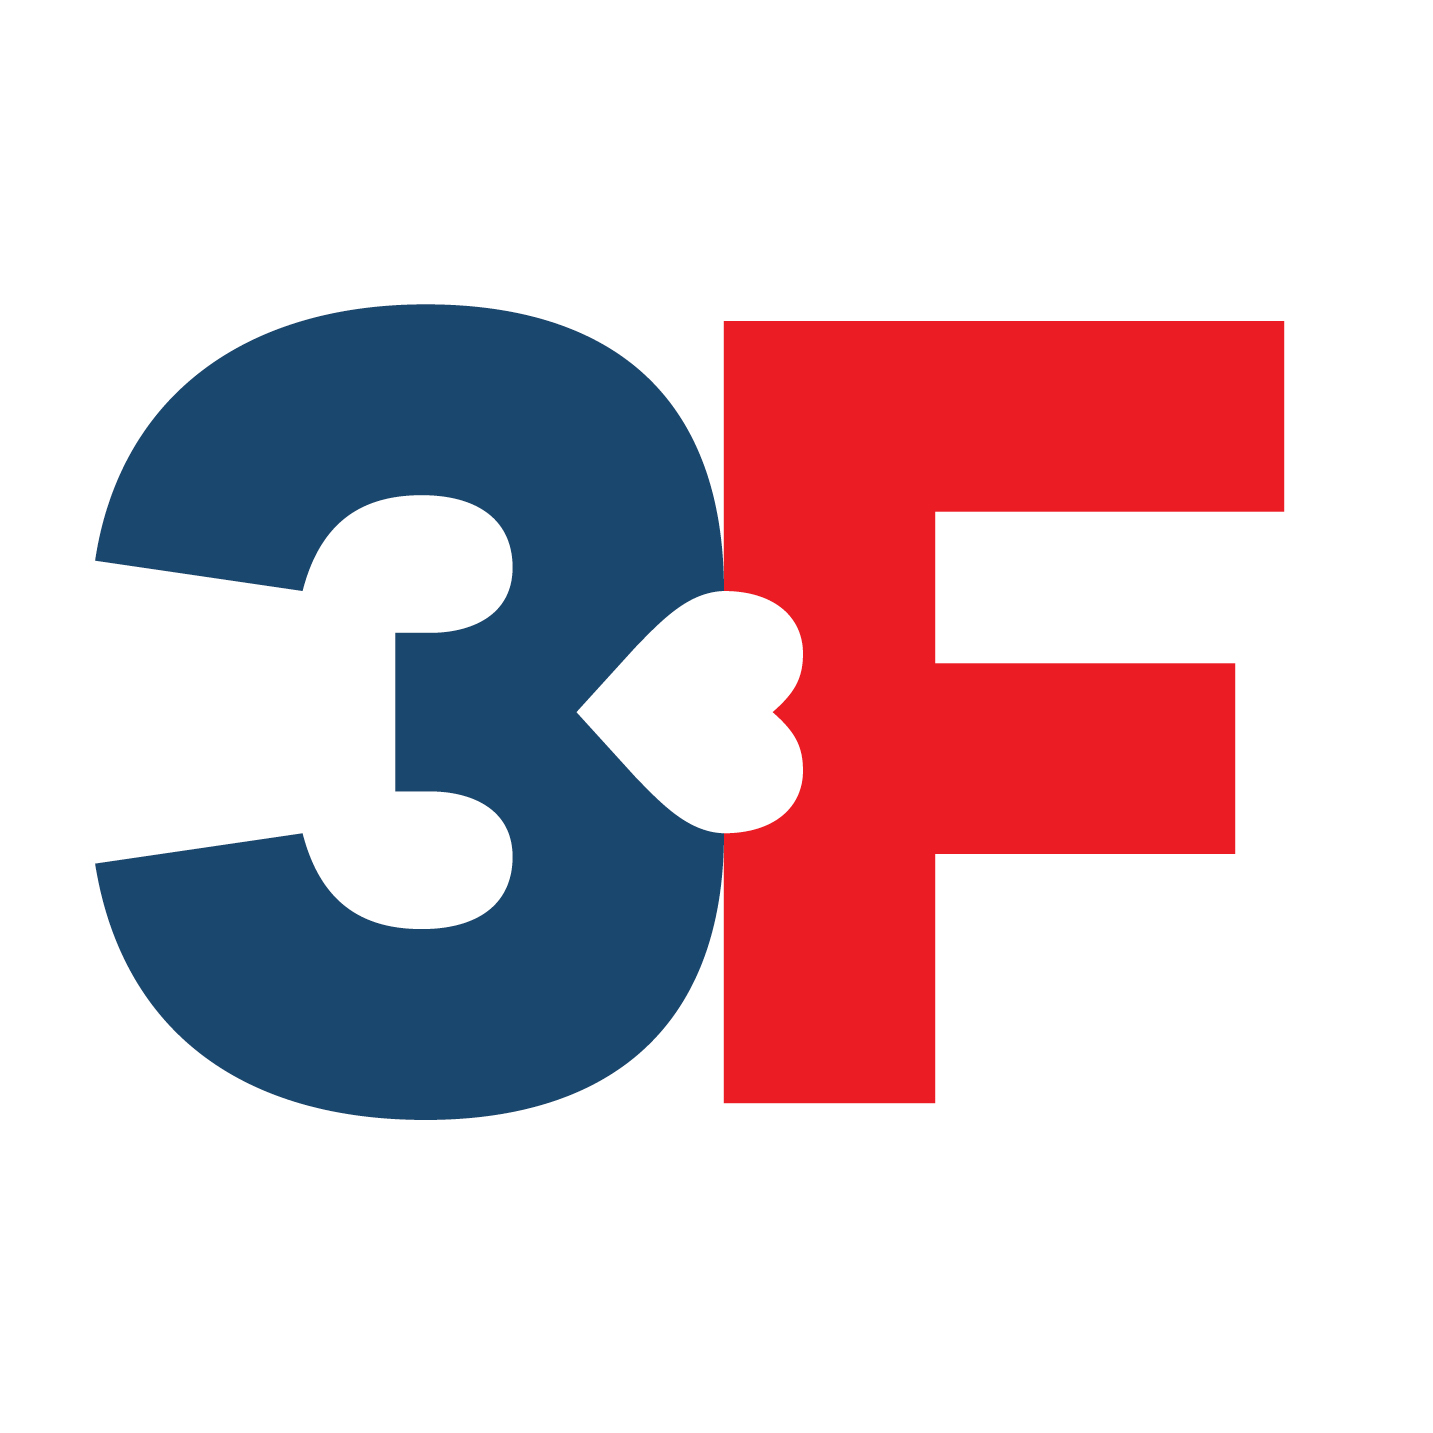 3F Logo 2400x1330